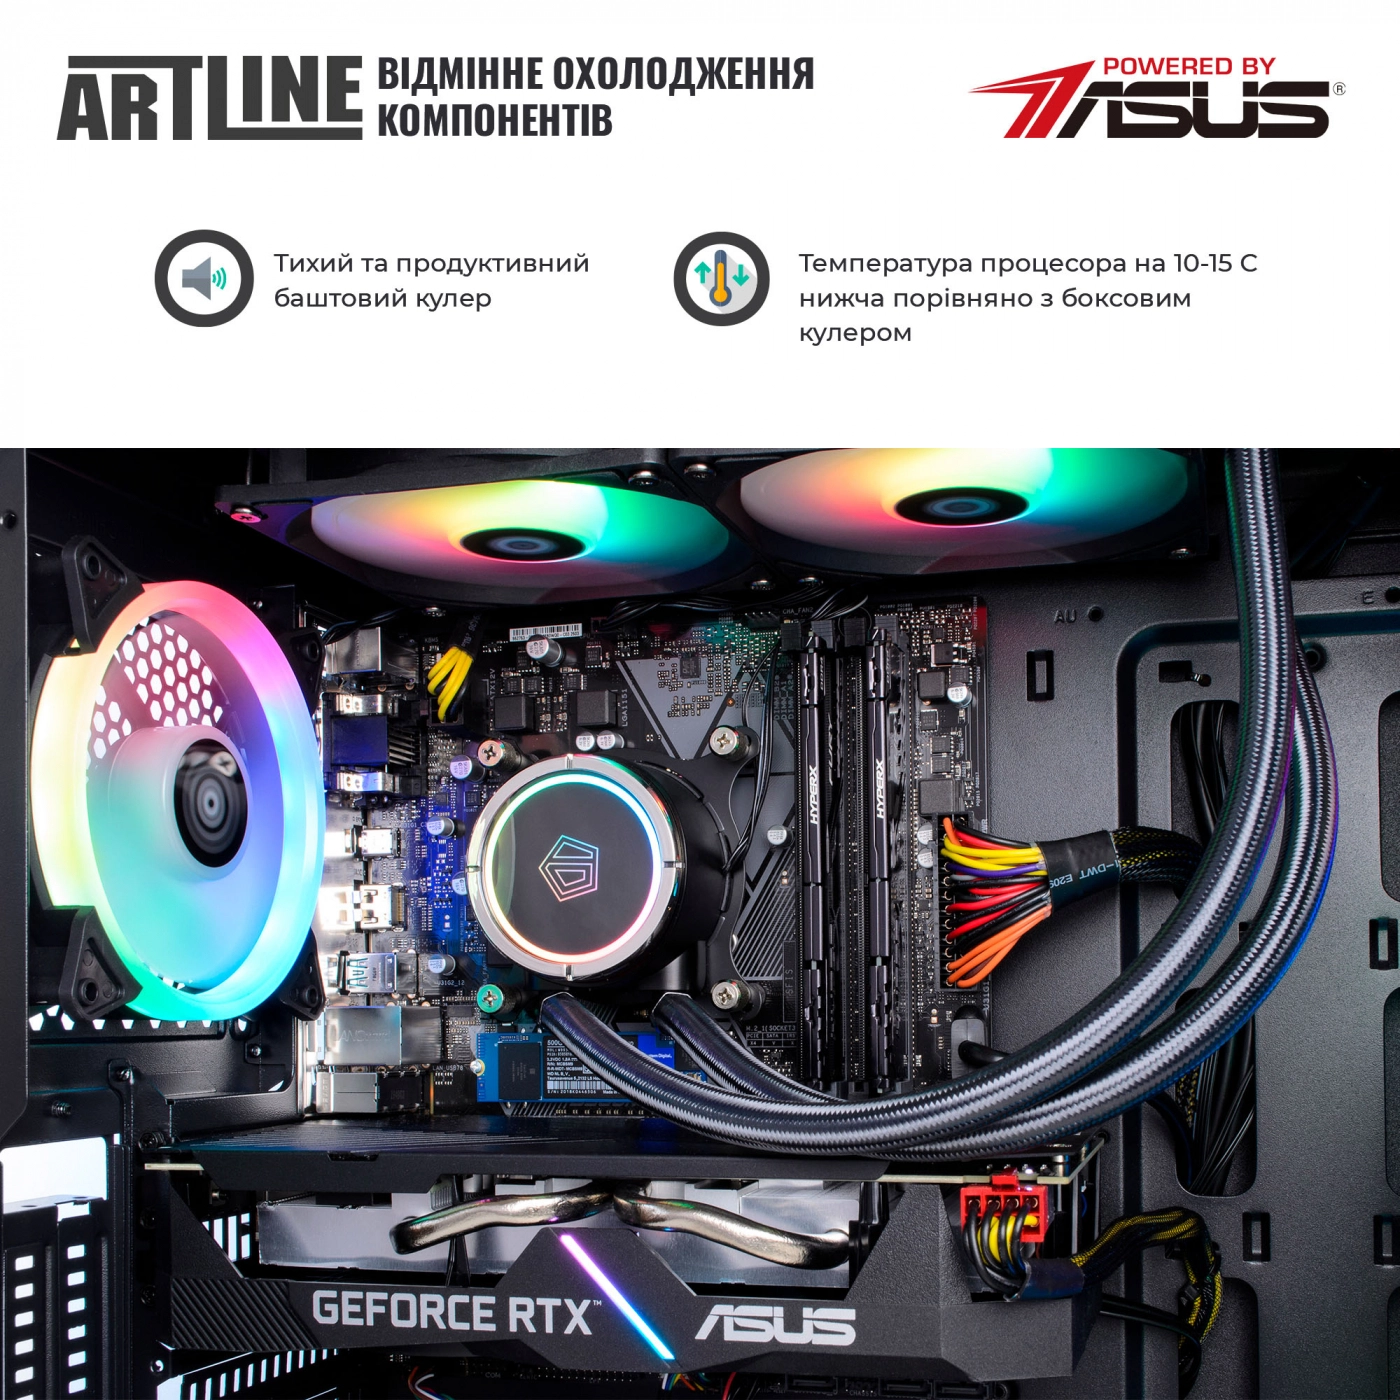 Купить Компьютер ARTLINE Gaming X75v30 - фото 3